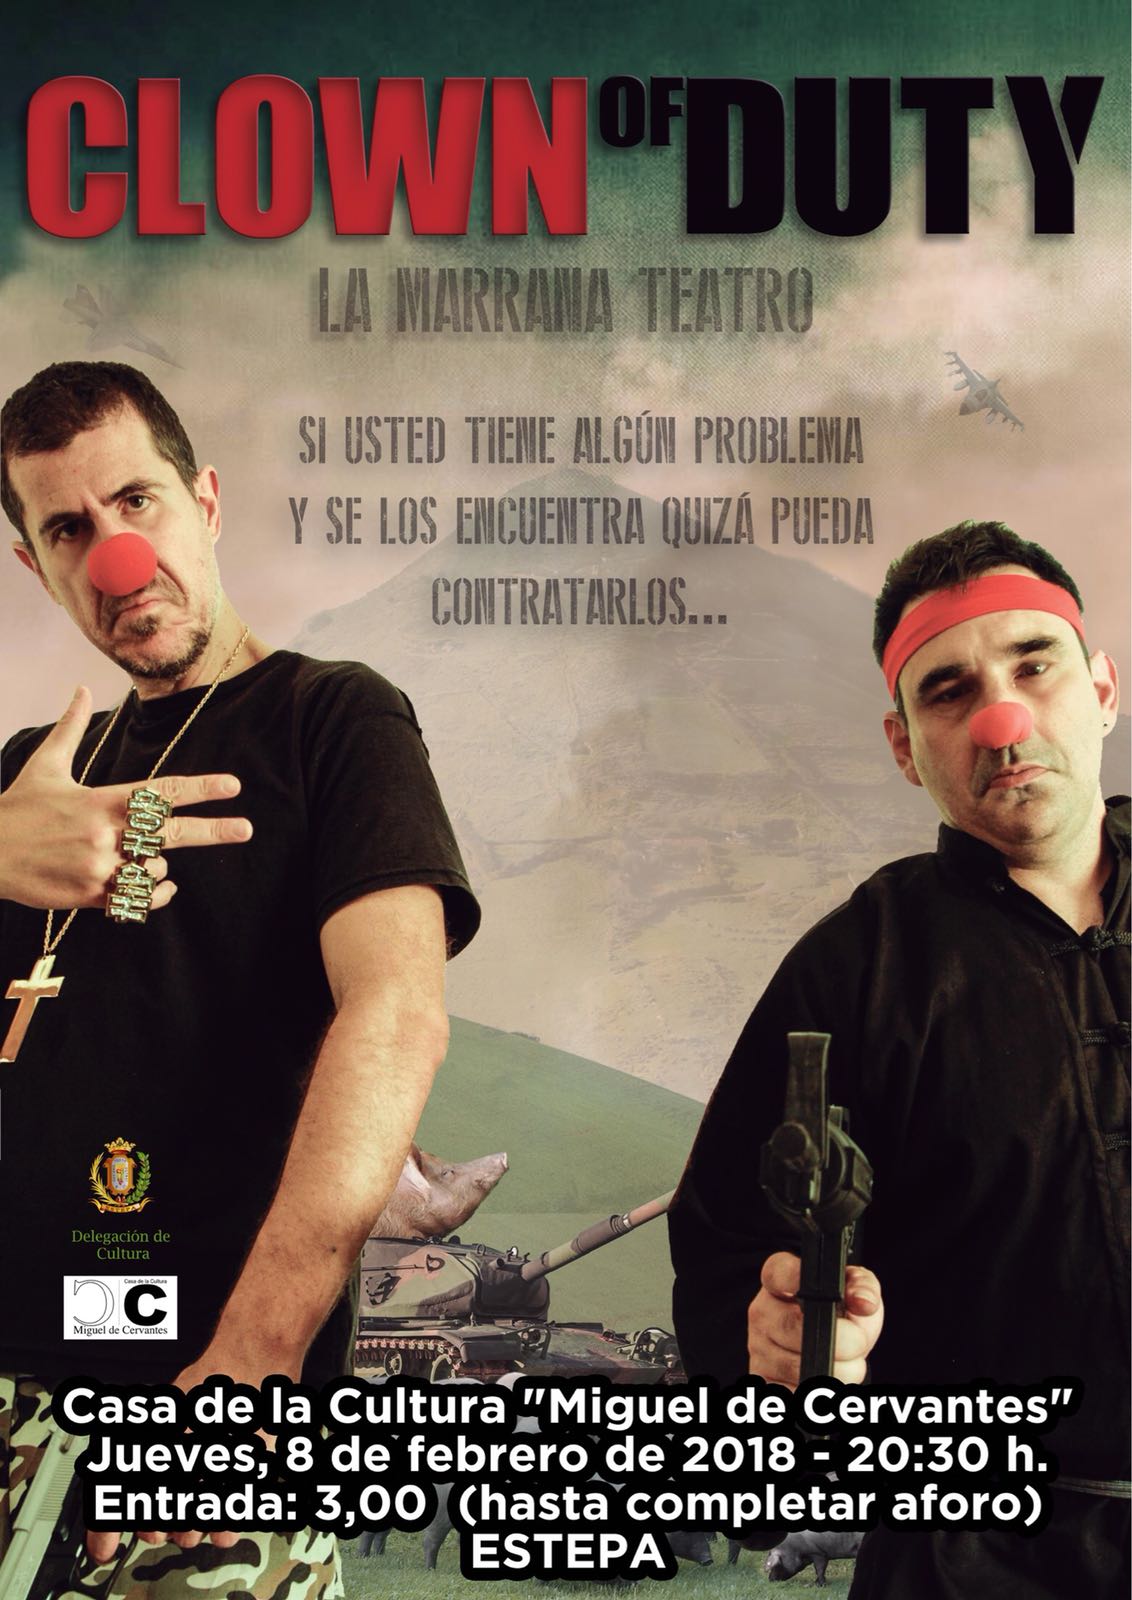 Teatro en Estepa: "Clown of Duty"